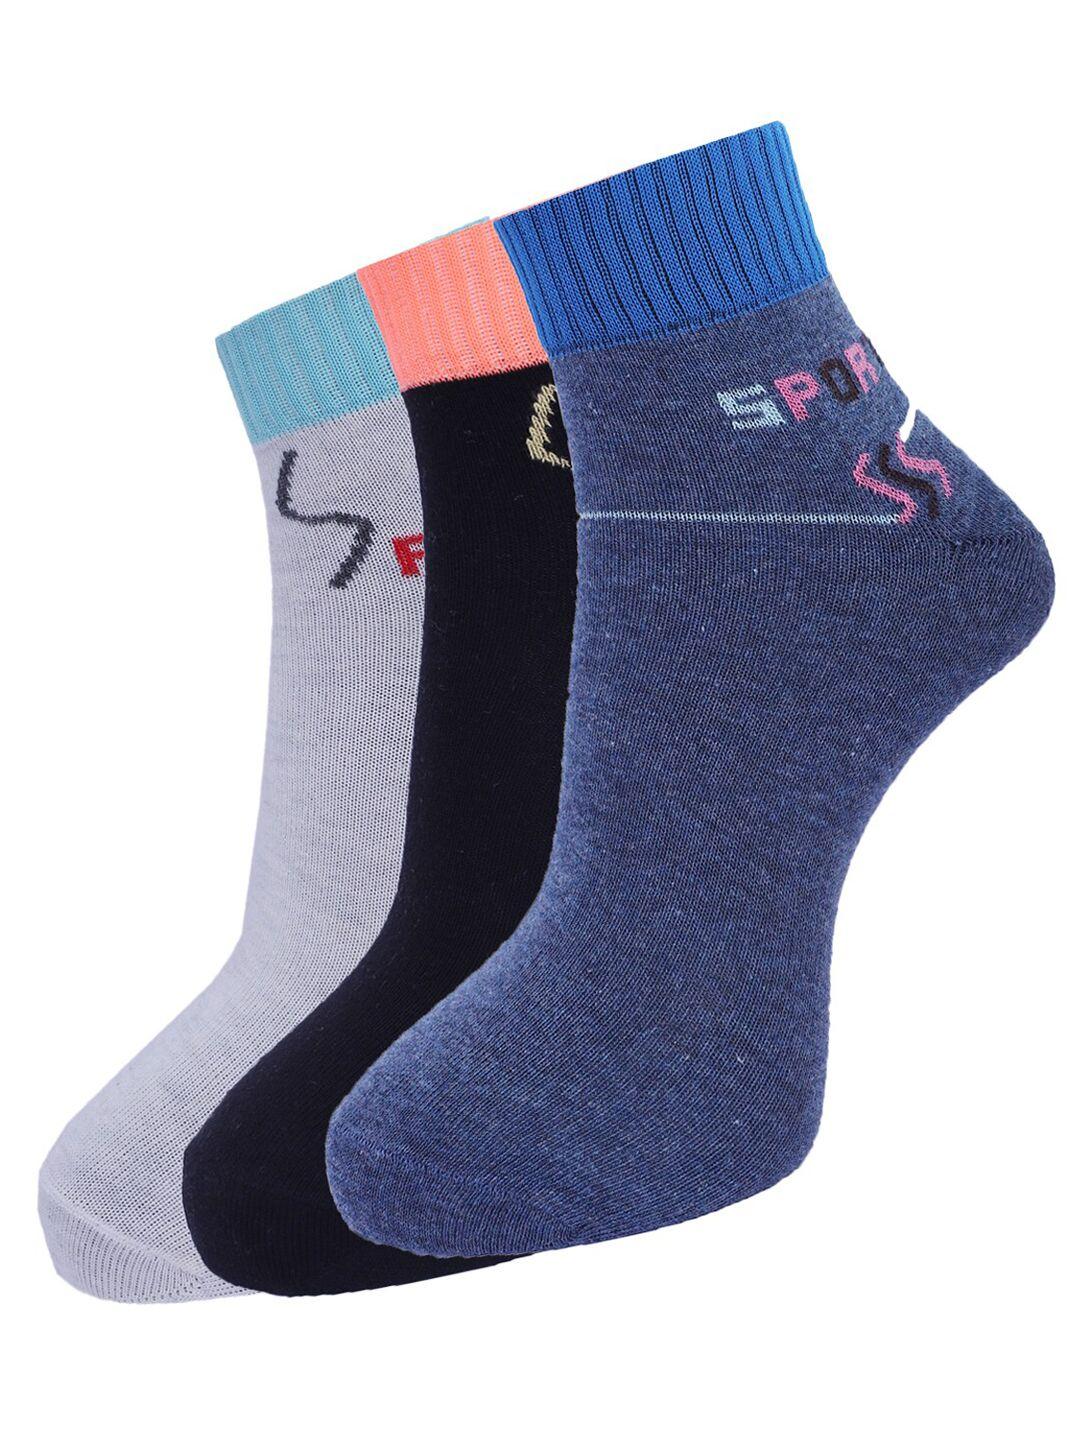 dollar socks men  pack of 3 assorted  ankle length socks